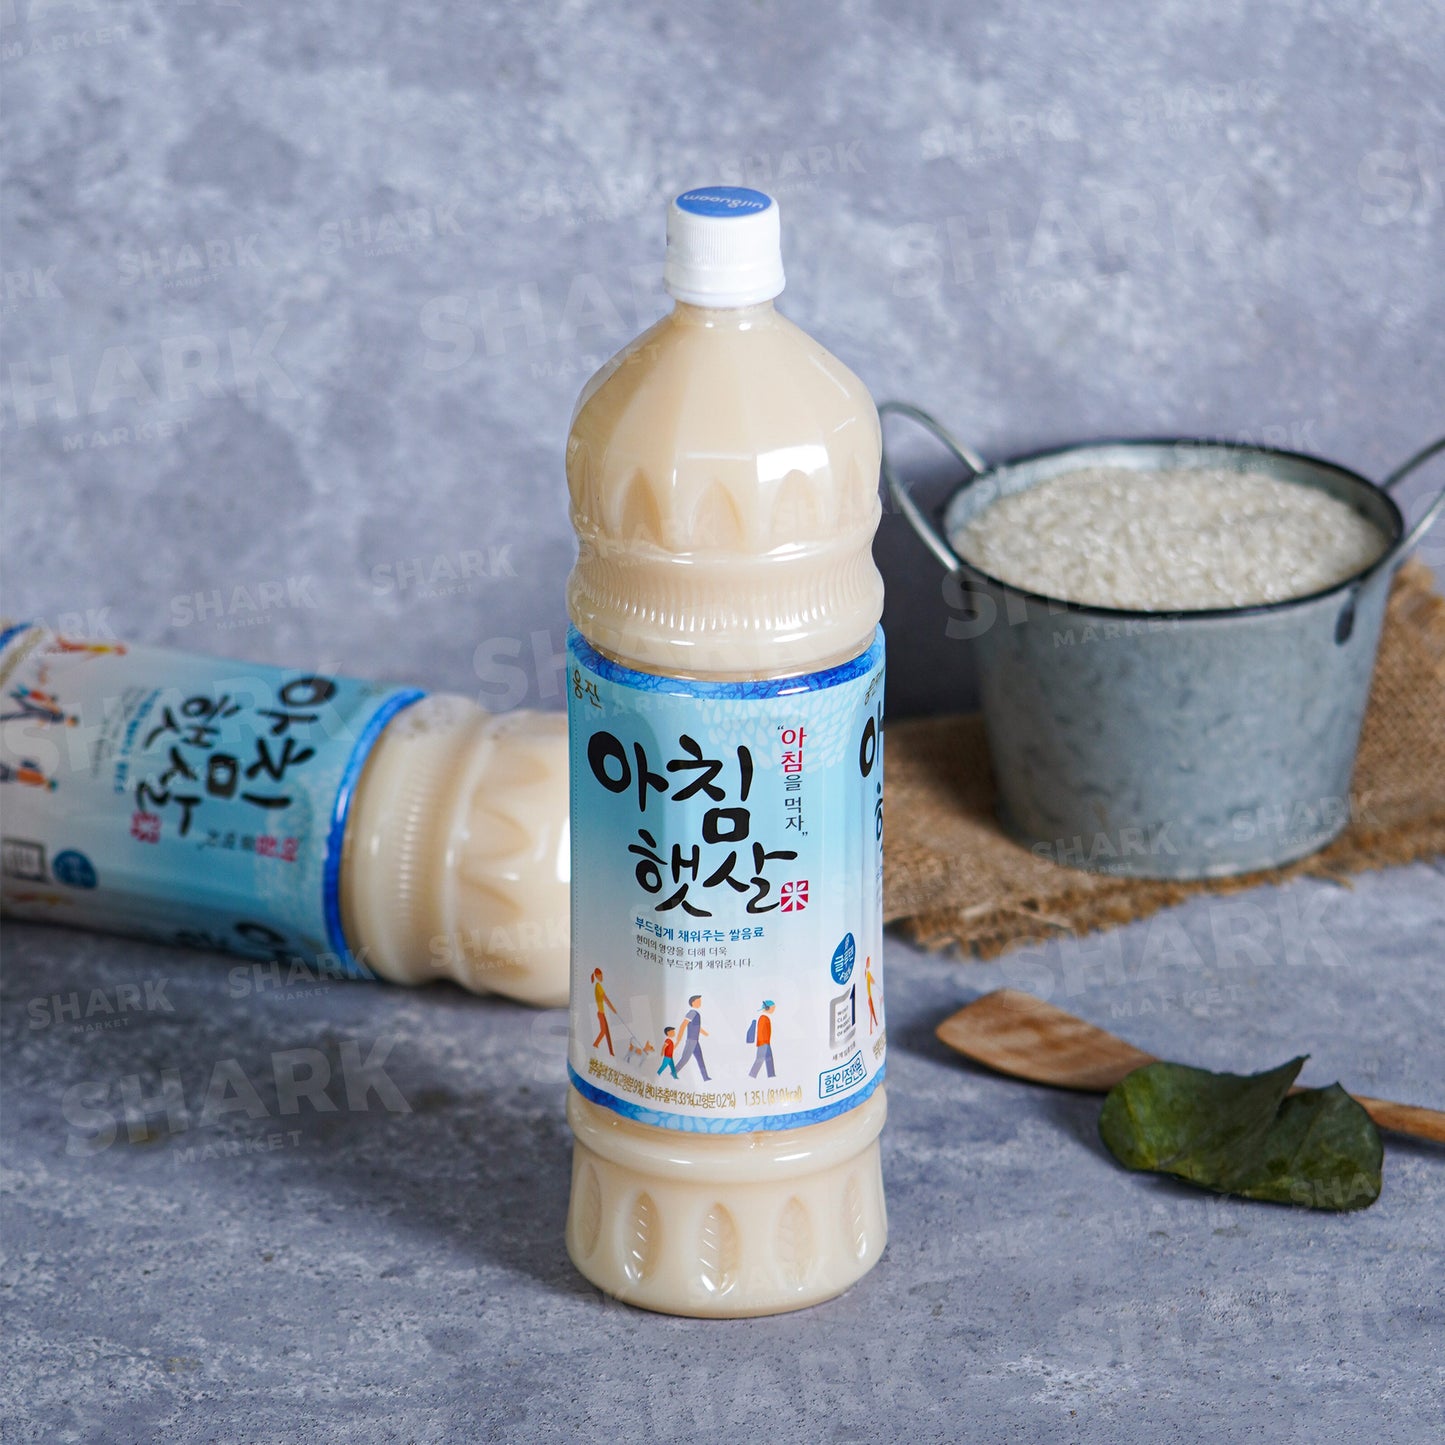 Woongjin Rice Drink 500ml 熊津米汁